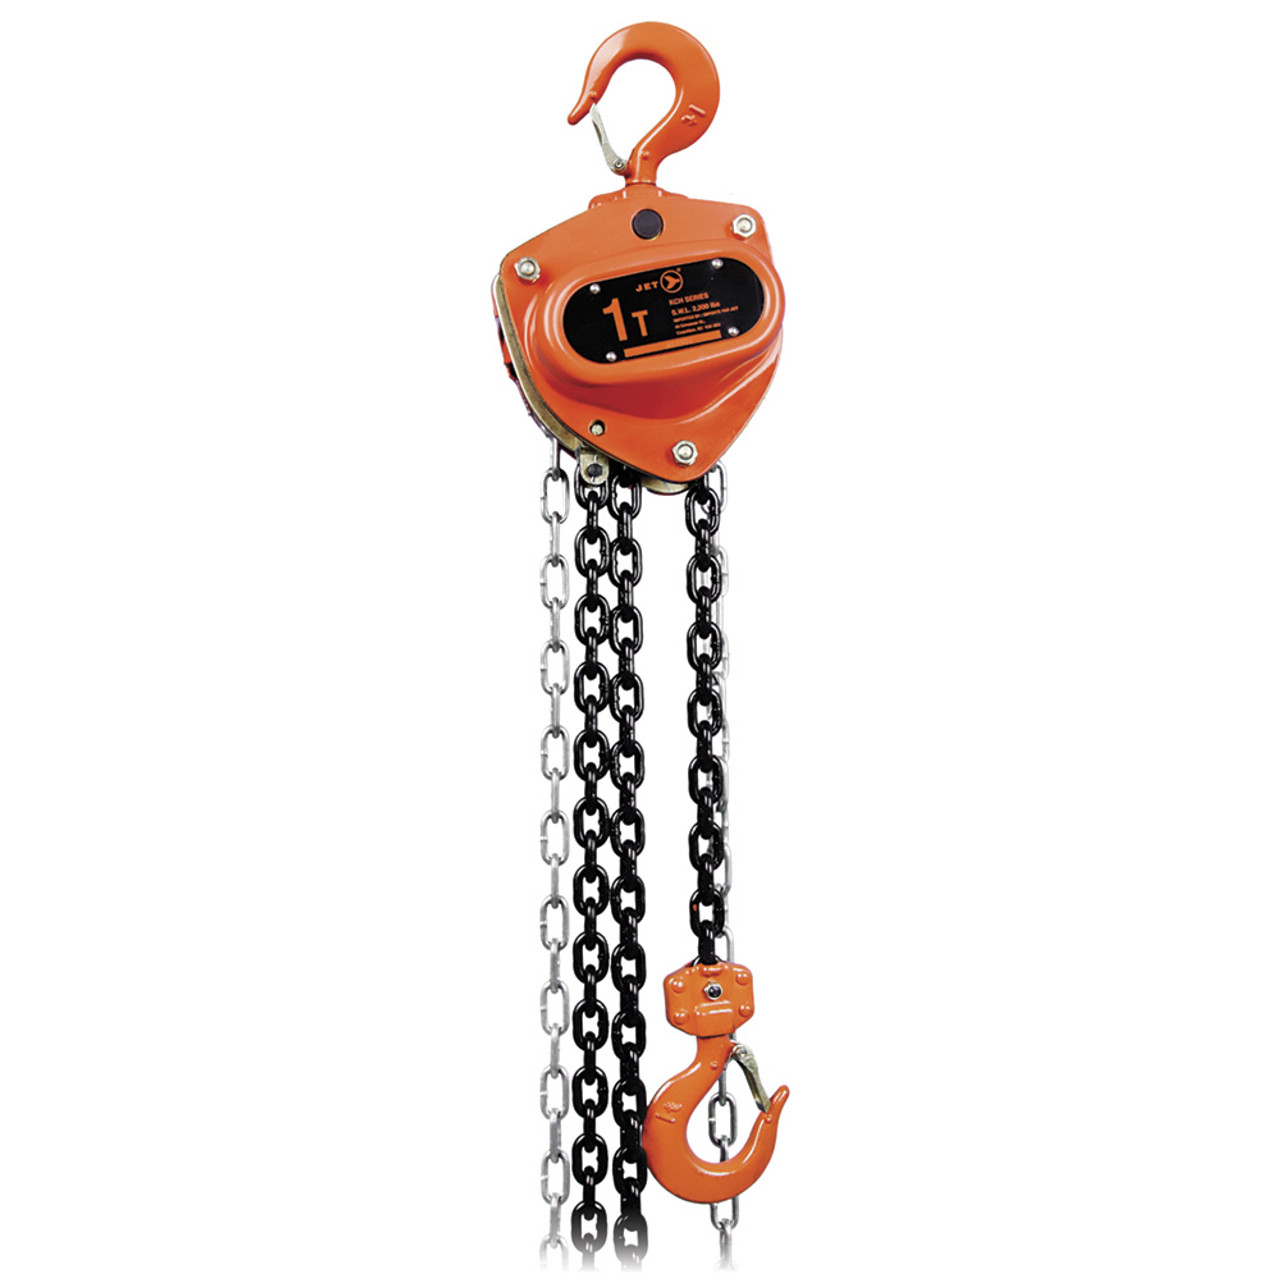 1T @ 20' Lift KCH w/Overload Protection Chain Hoist  101316